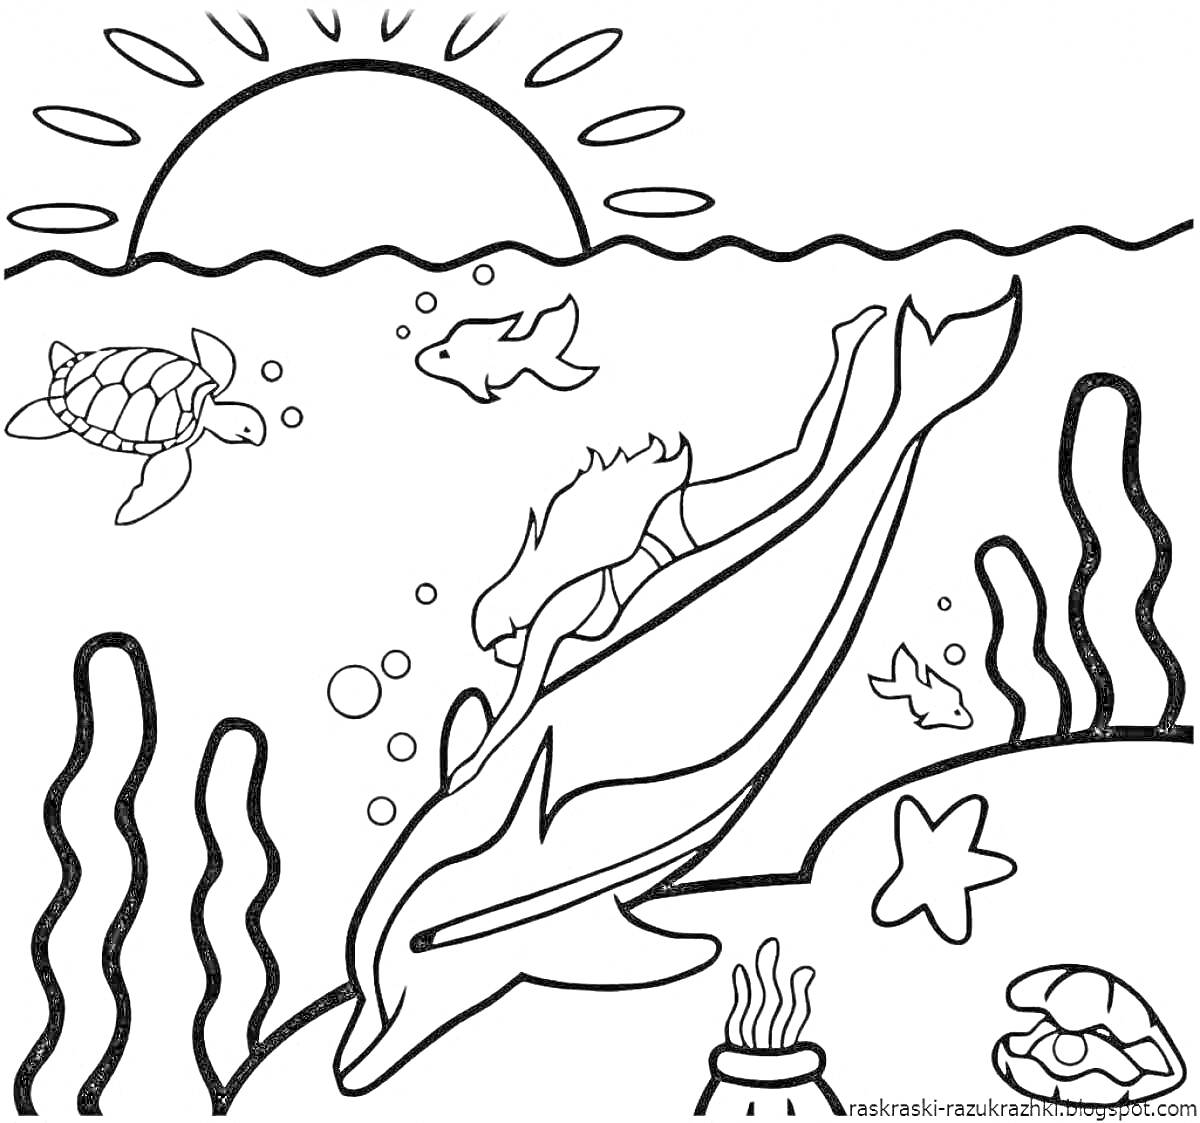 На раскраске изображено: Подводный мир, Черепаха, Водоросли, Море, Солнце, Рыба, Животные, Дельфины, Океаны, Морские звезды